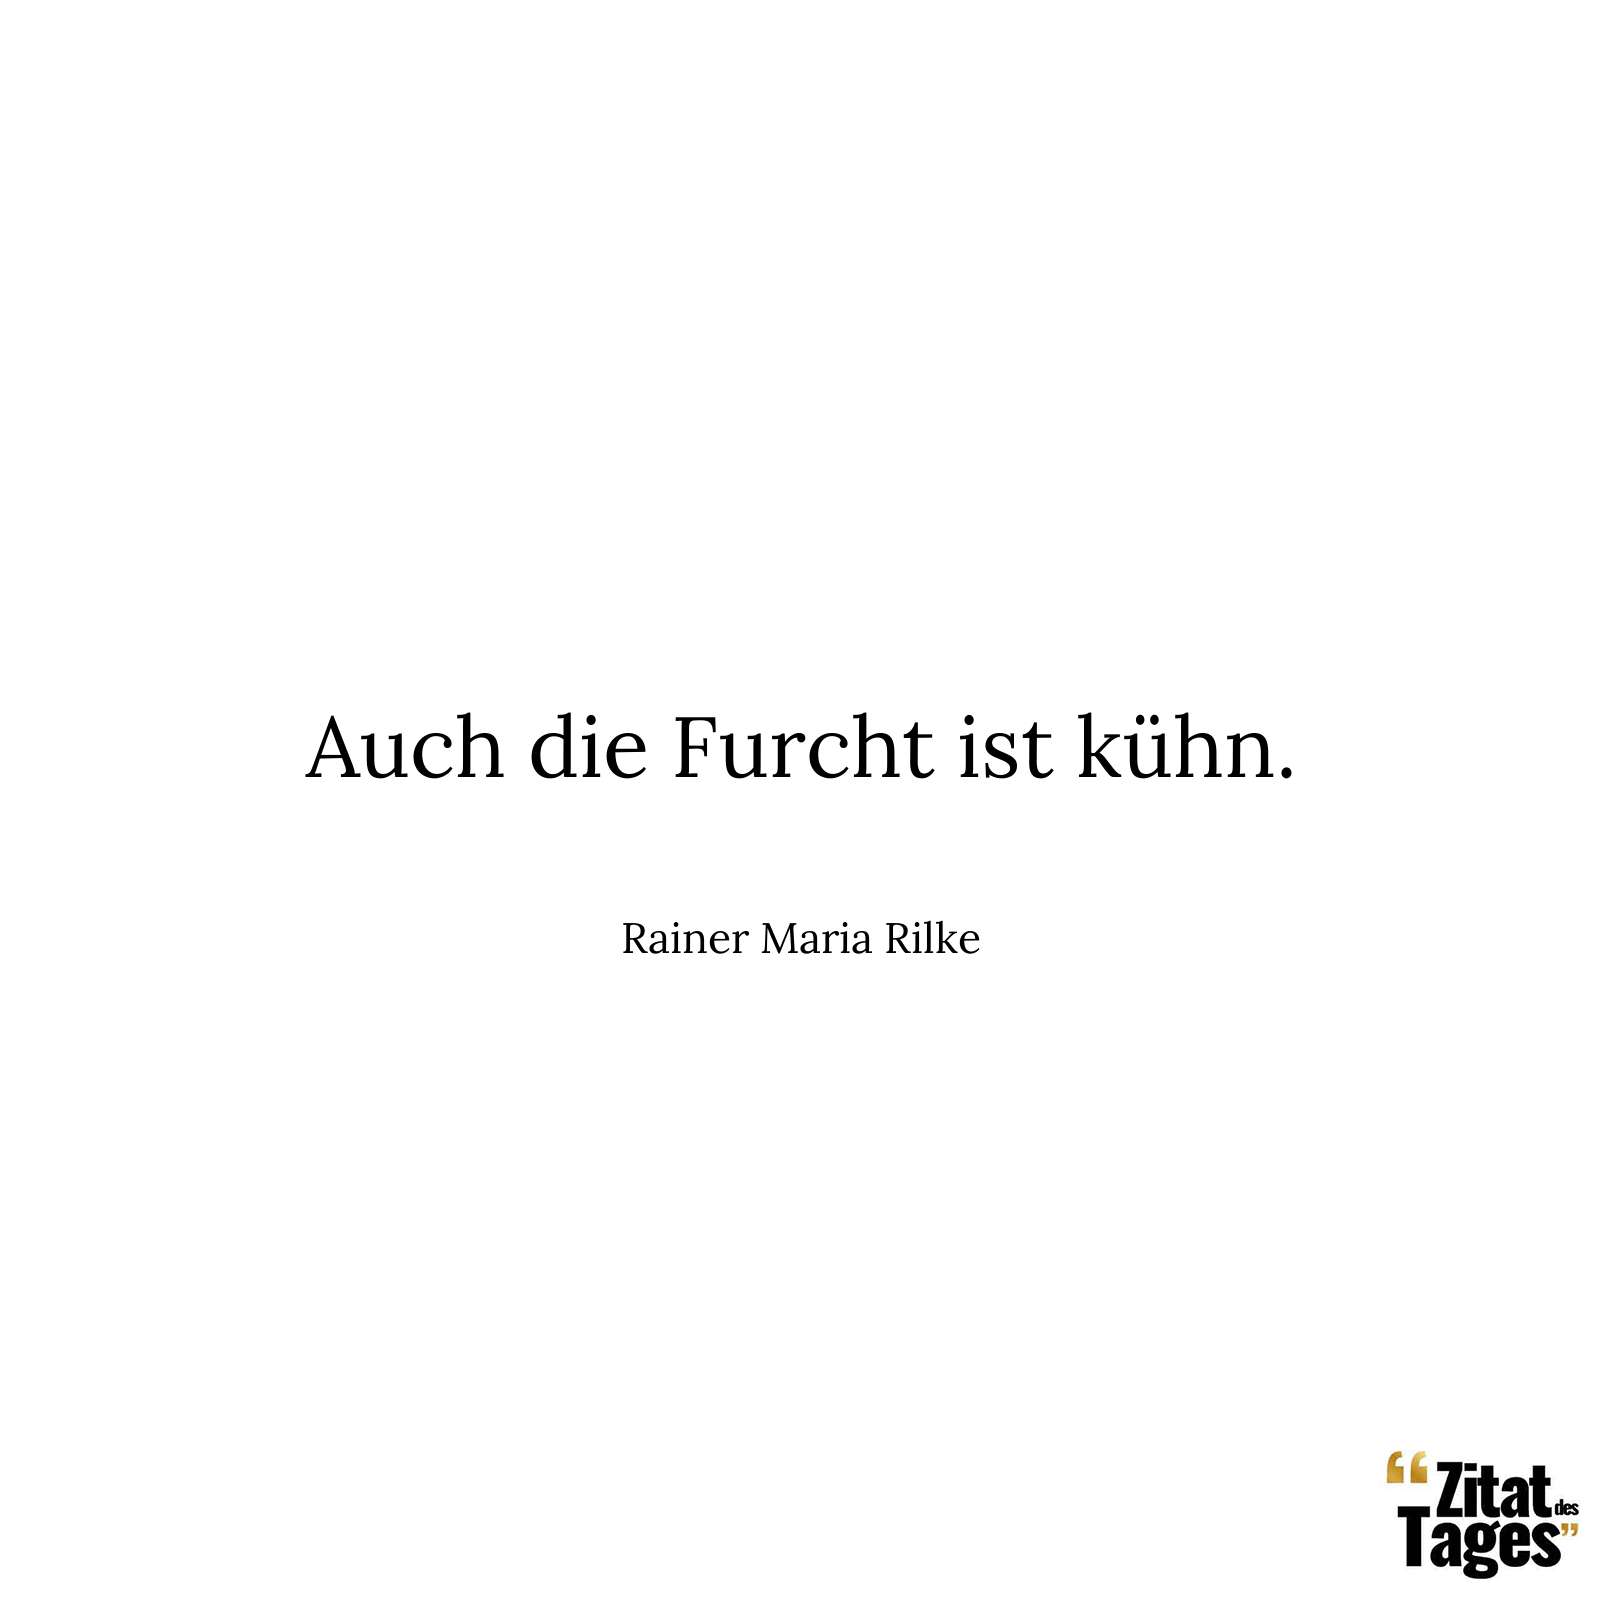 Auch die Furcht ist kühn. - Rainer Maria Rilke